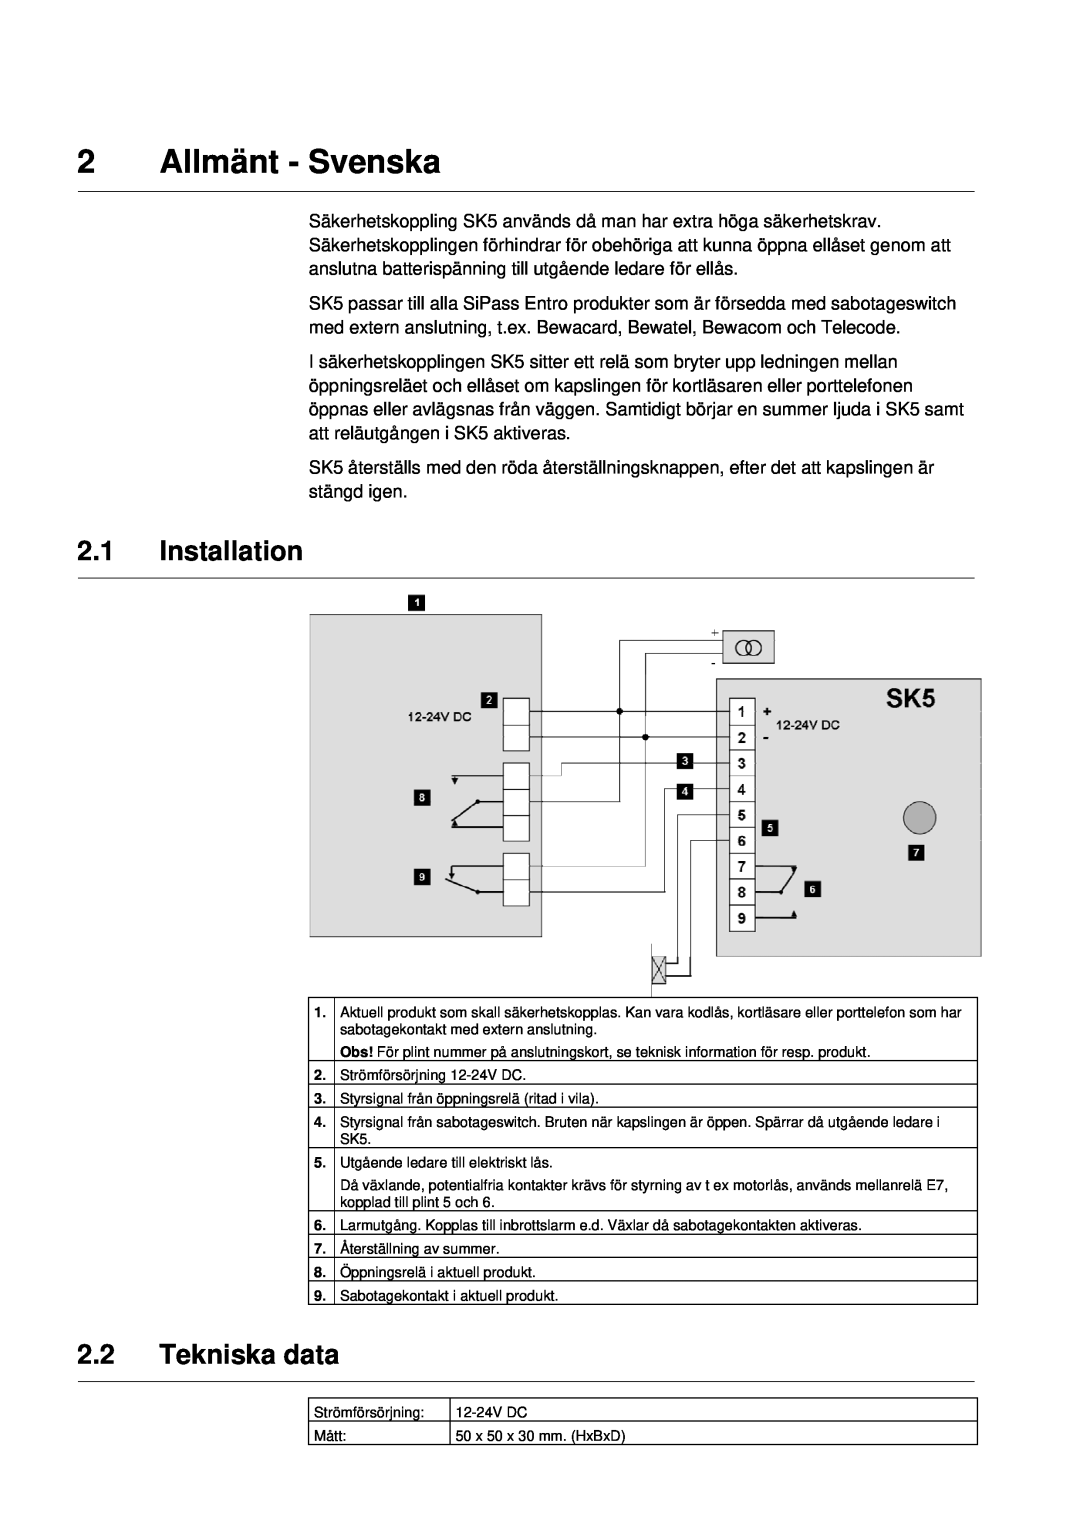 Siemens SK5 manual Allmänt - Svenska, 2.1Installation, 2.2Tekniska data 